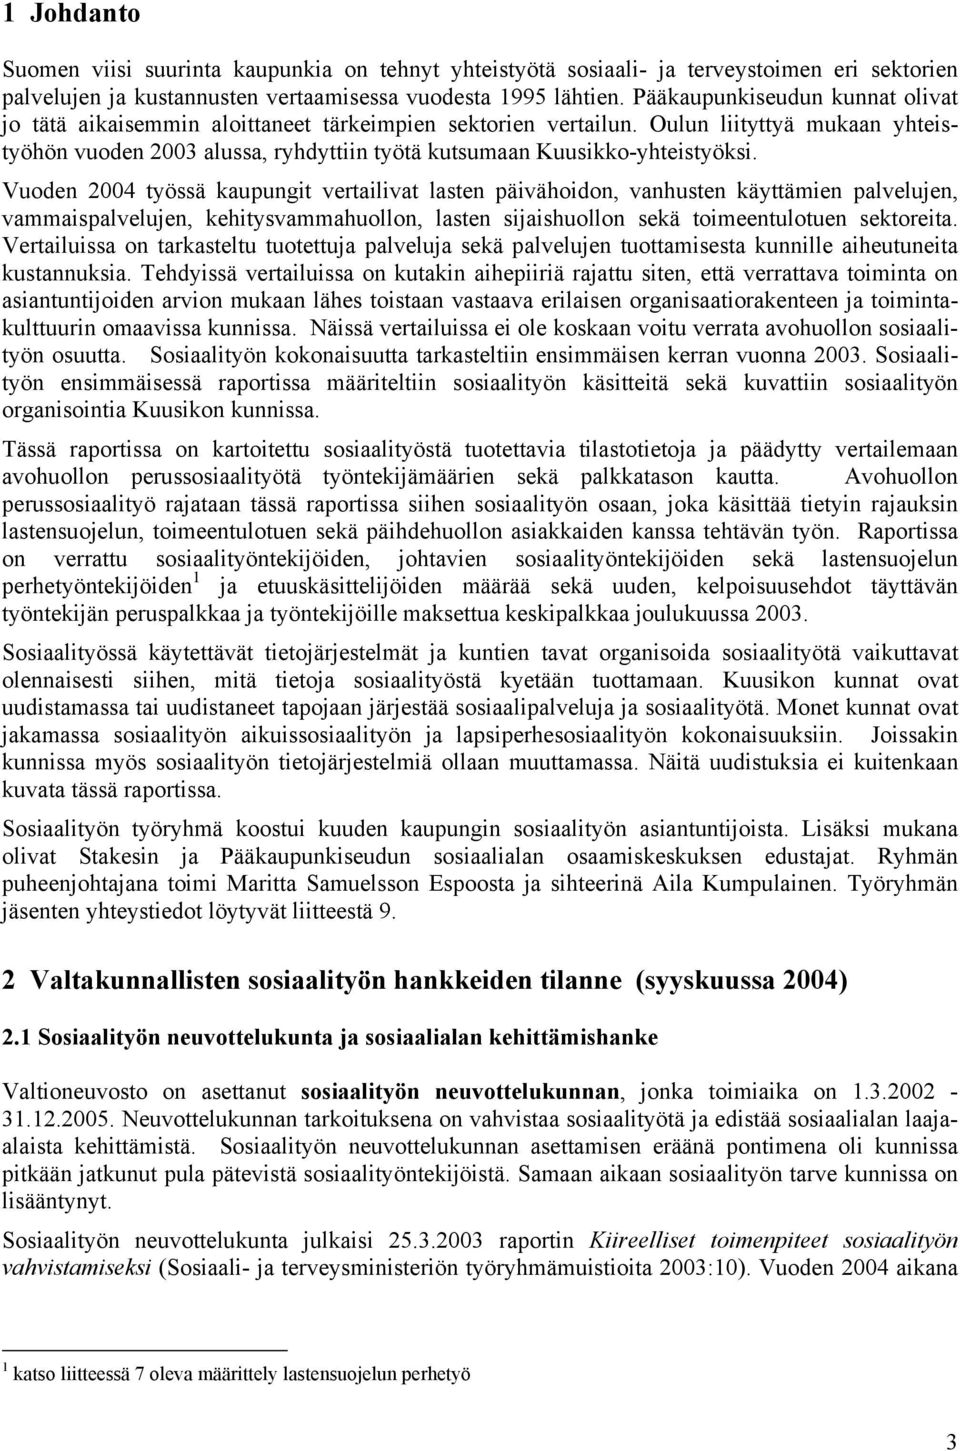 Oulun liityttyä mukaan yhteistyöhön vuoden 2003 alussa, ryhdyttiin työtä kutsumaan Kuusikko-yhteistyöksi.